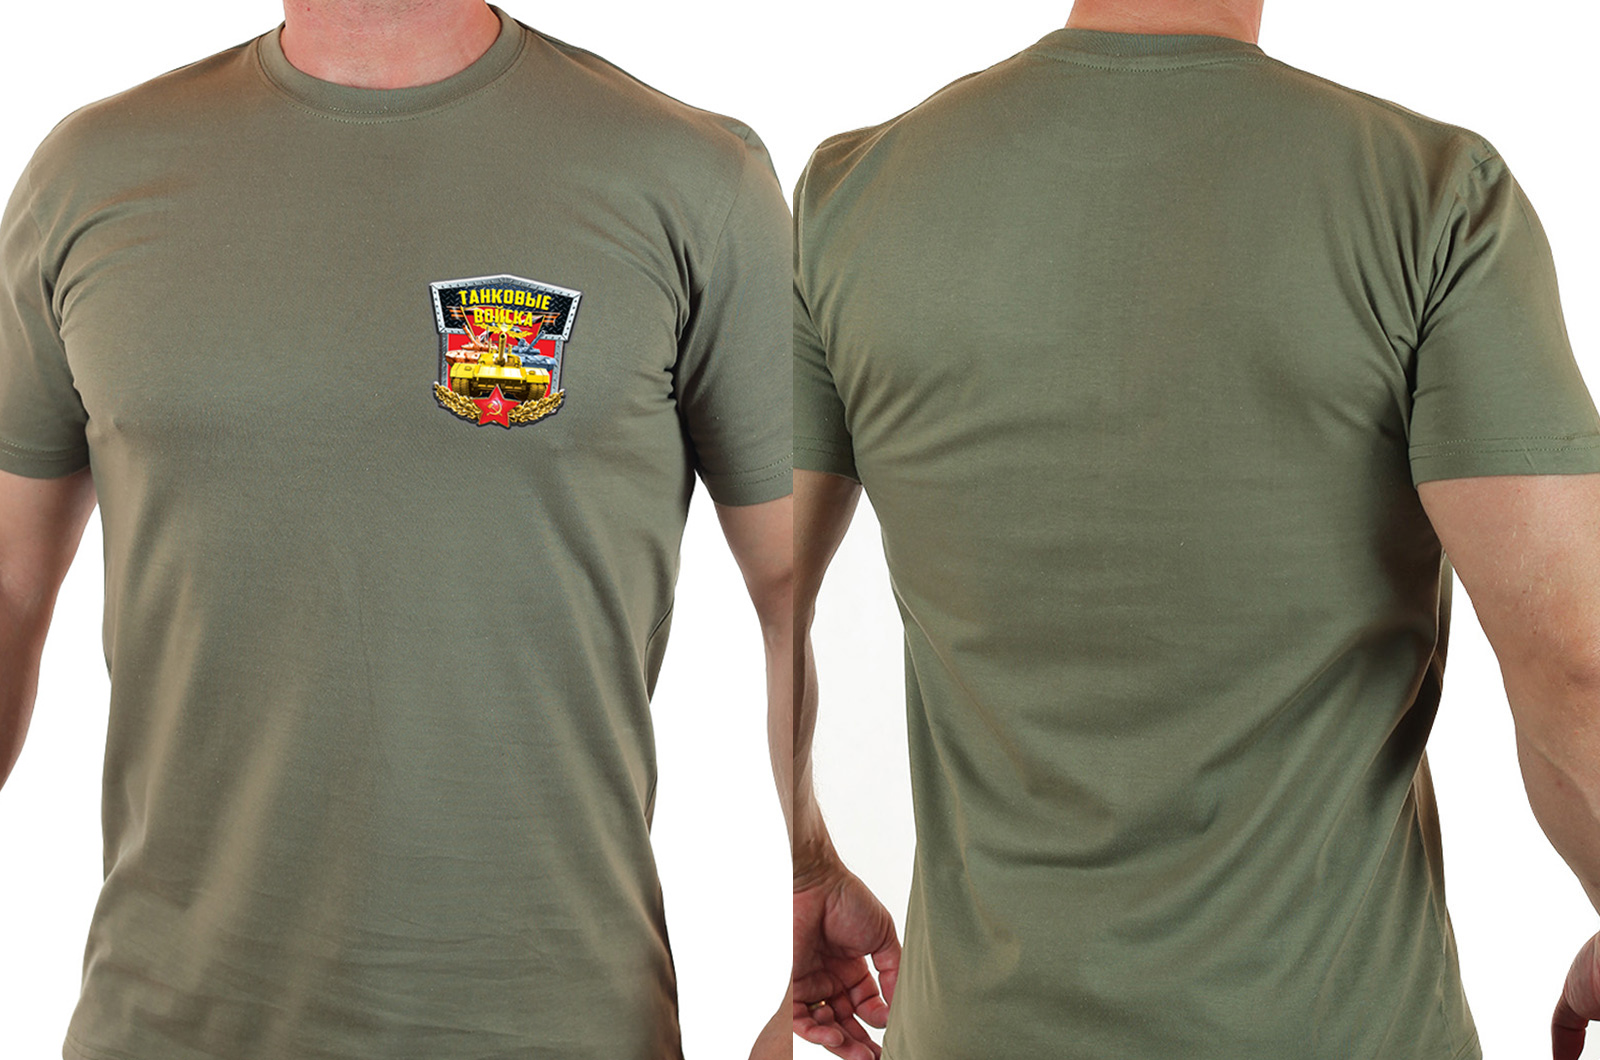 Крутая футболка для мужчины-танкиста. 